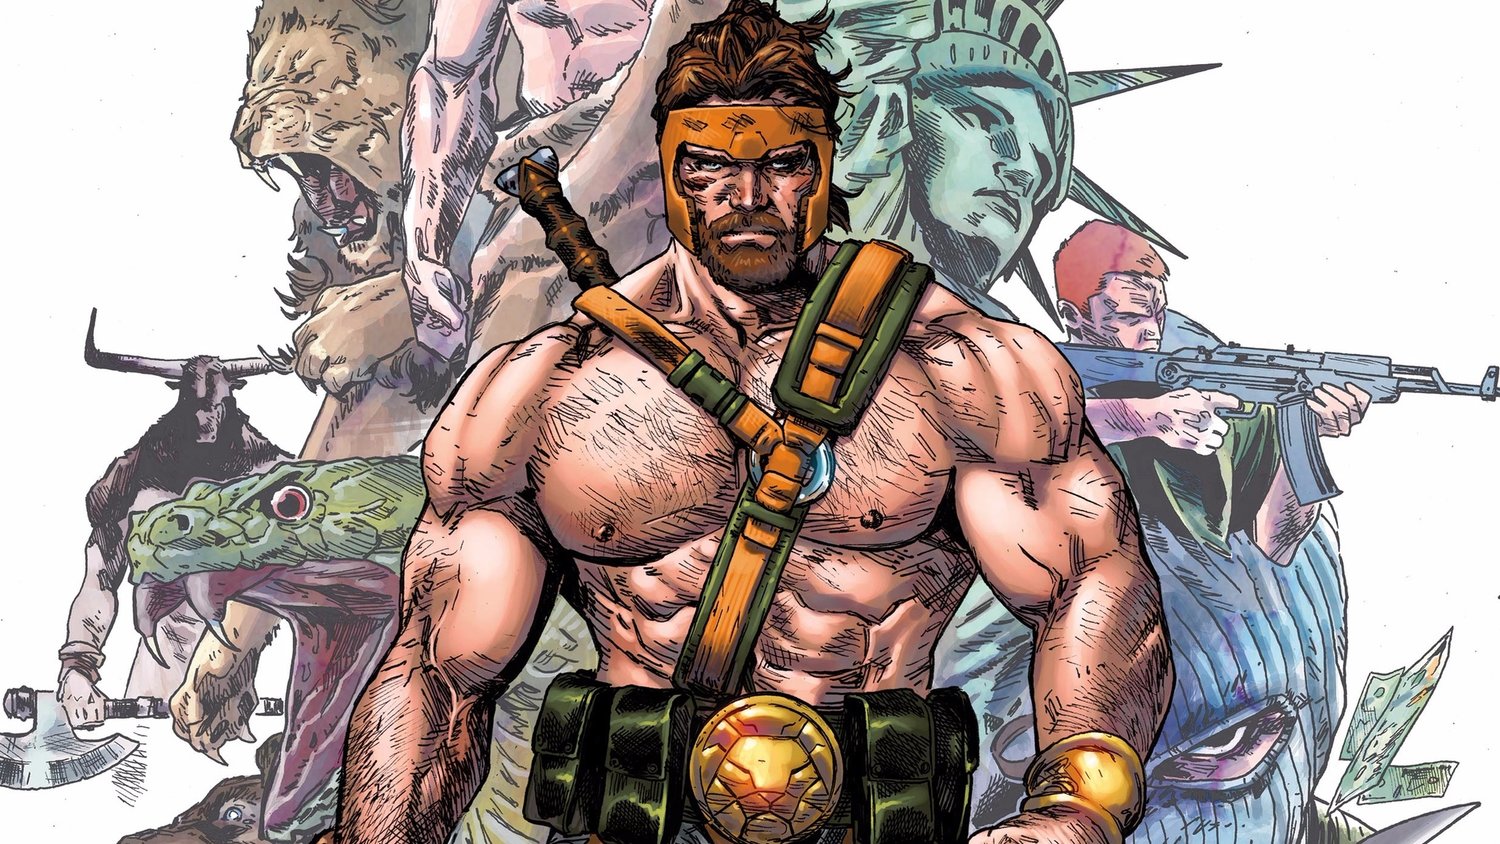 Son of Zeus, Hercules in Marvel Comics